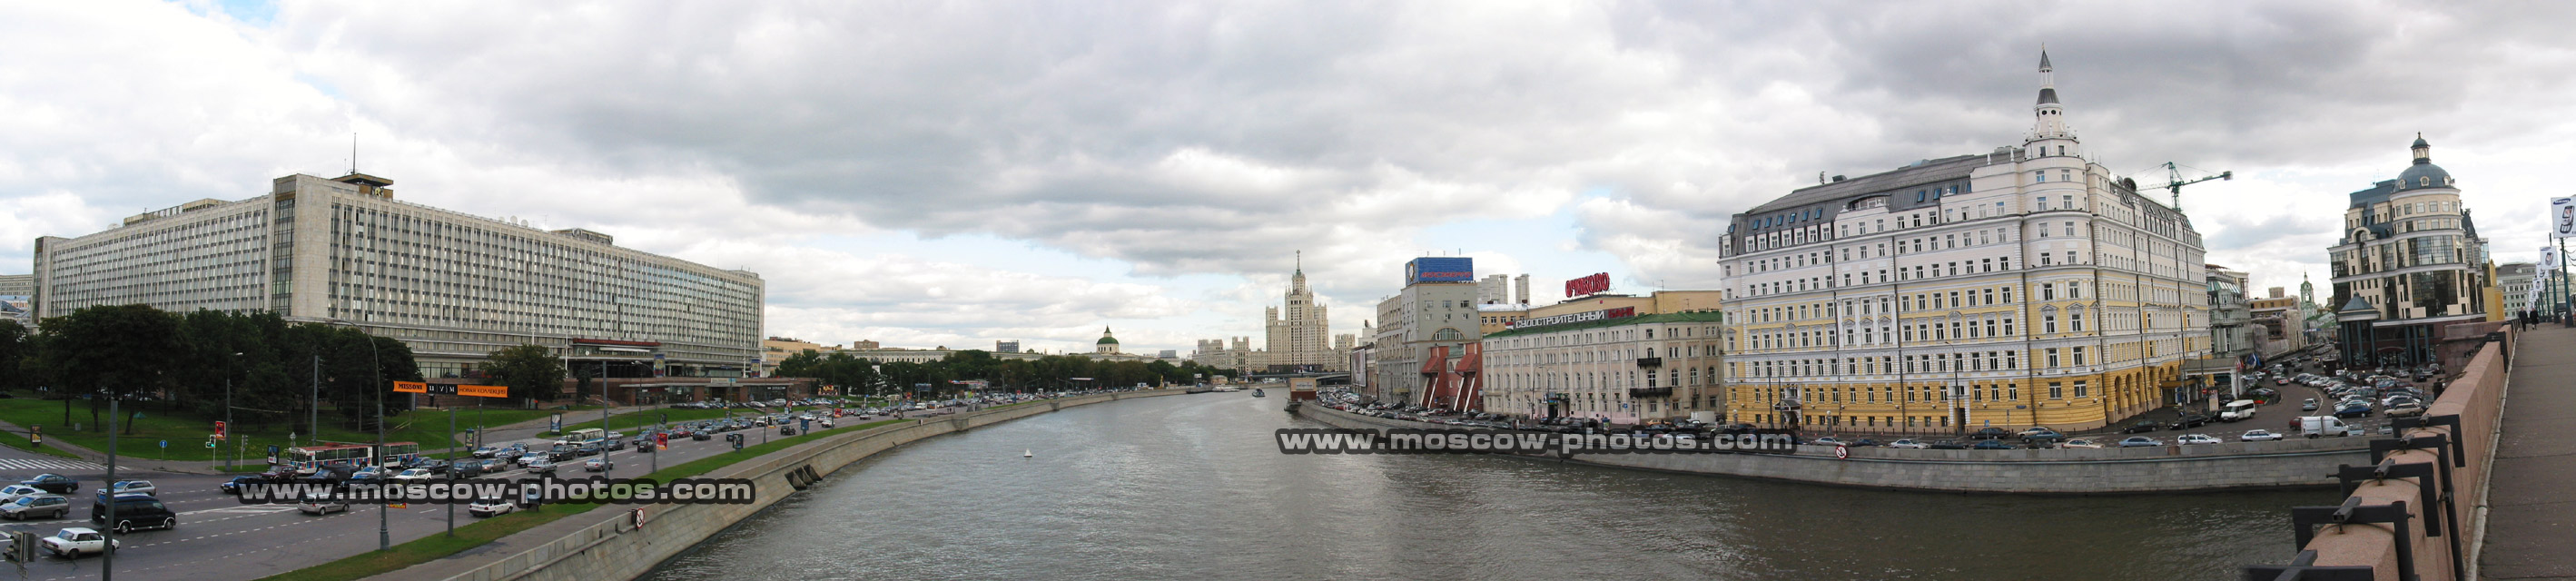 View from Bolshoy Moskvoretsky Bridge